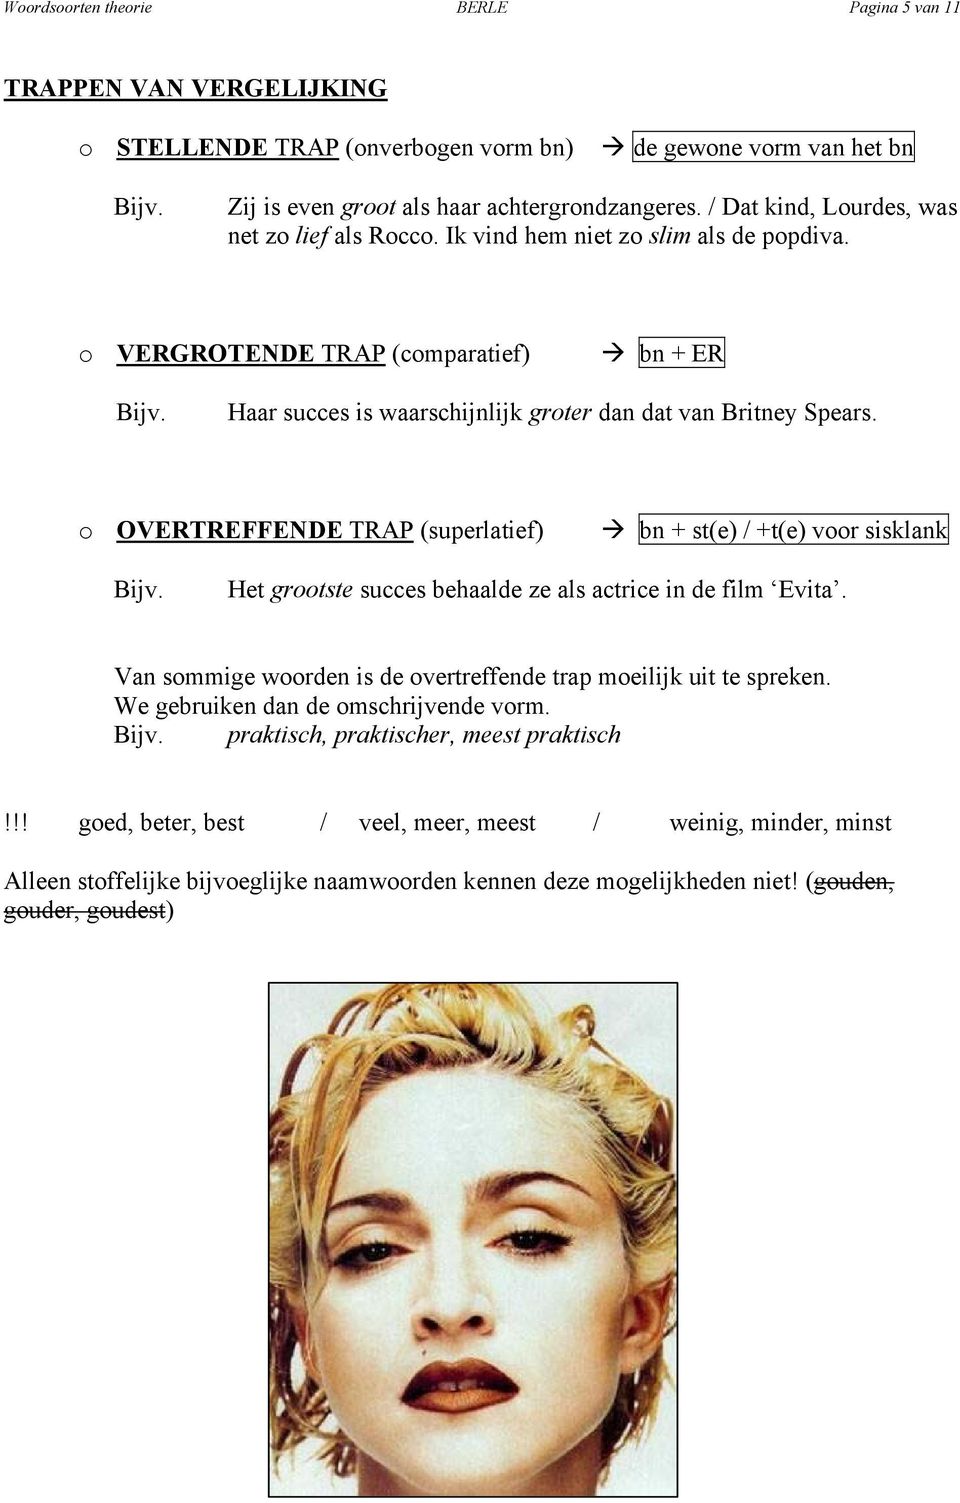 o OVERTREFFENDE TRAP (superlatief) bn + st(e) / +t(e) voor sisklank Bijv. Het grootste succes behaalde ze als actrice in de film Evita.